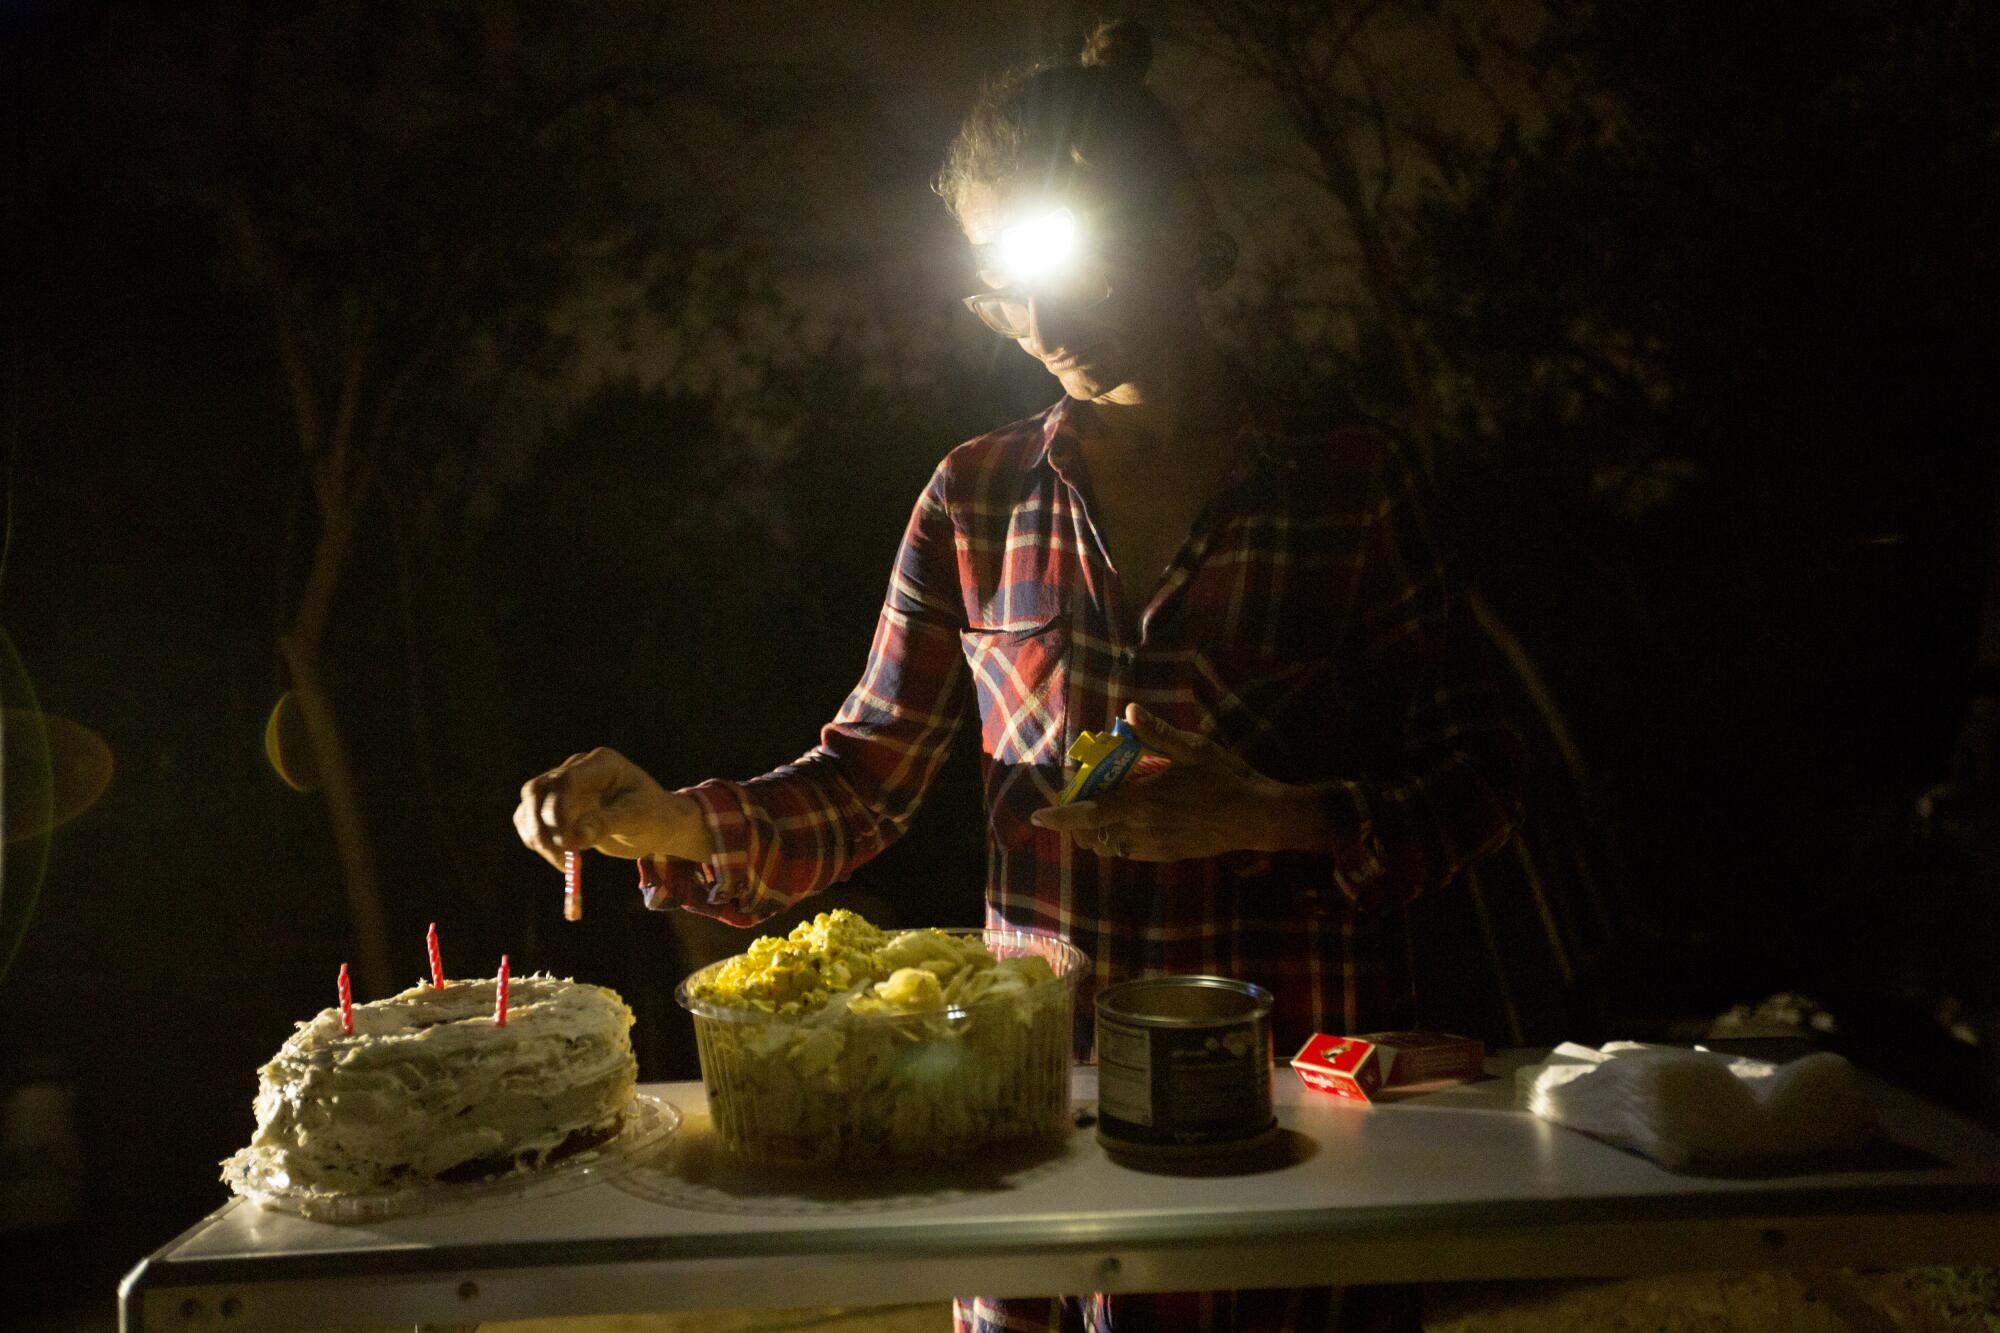 Elizabeth Bolton puts candles on a birthday cake for her boyfriend, Pablo Mawyin.